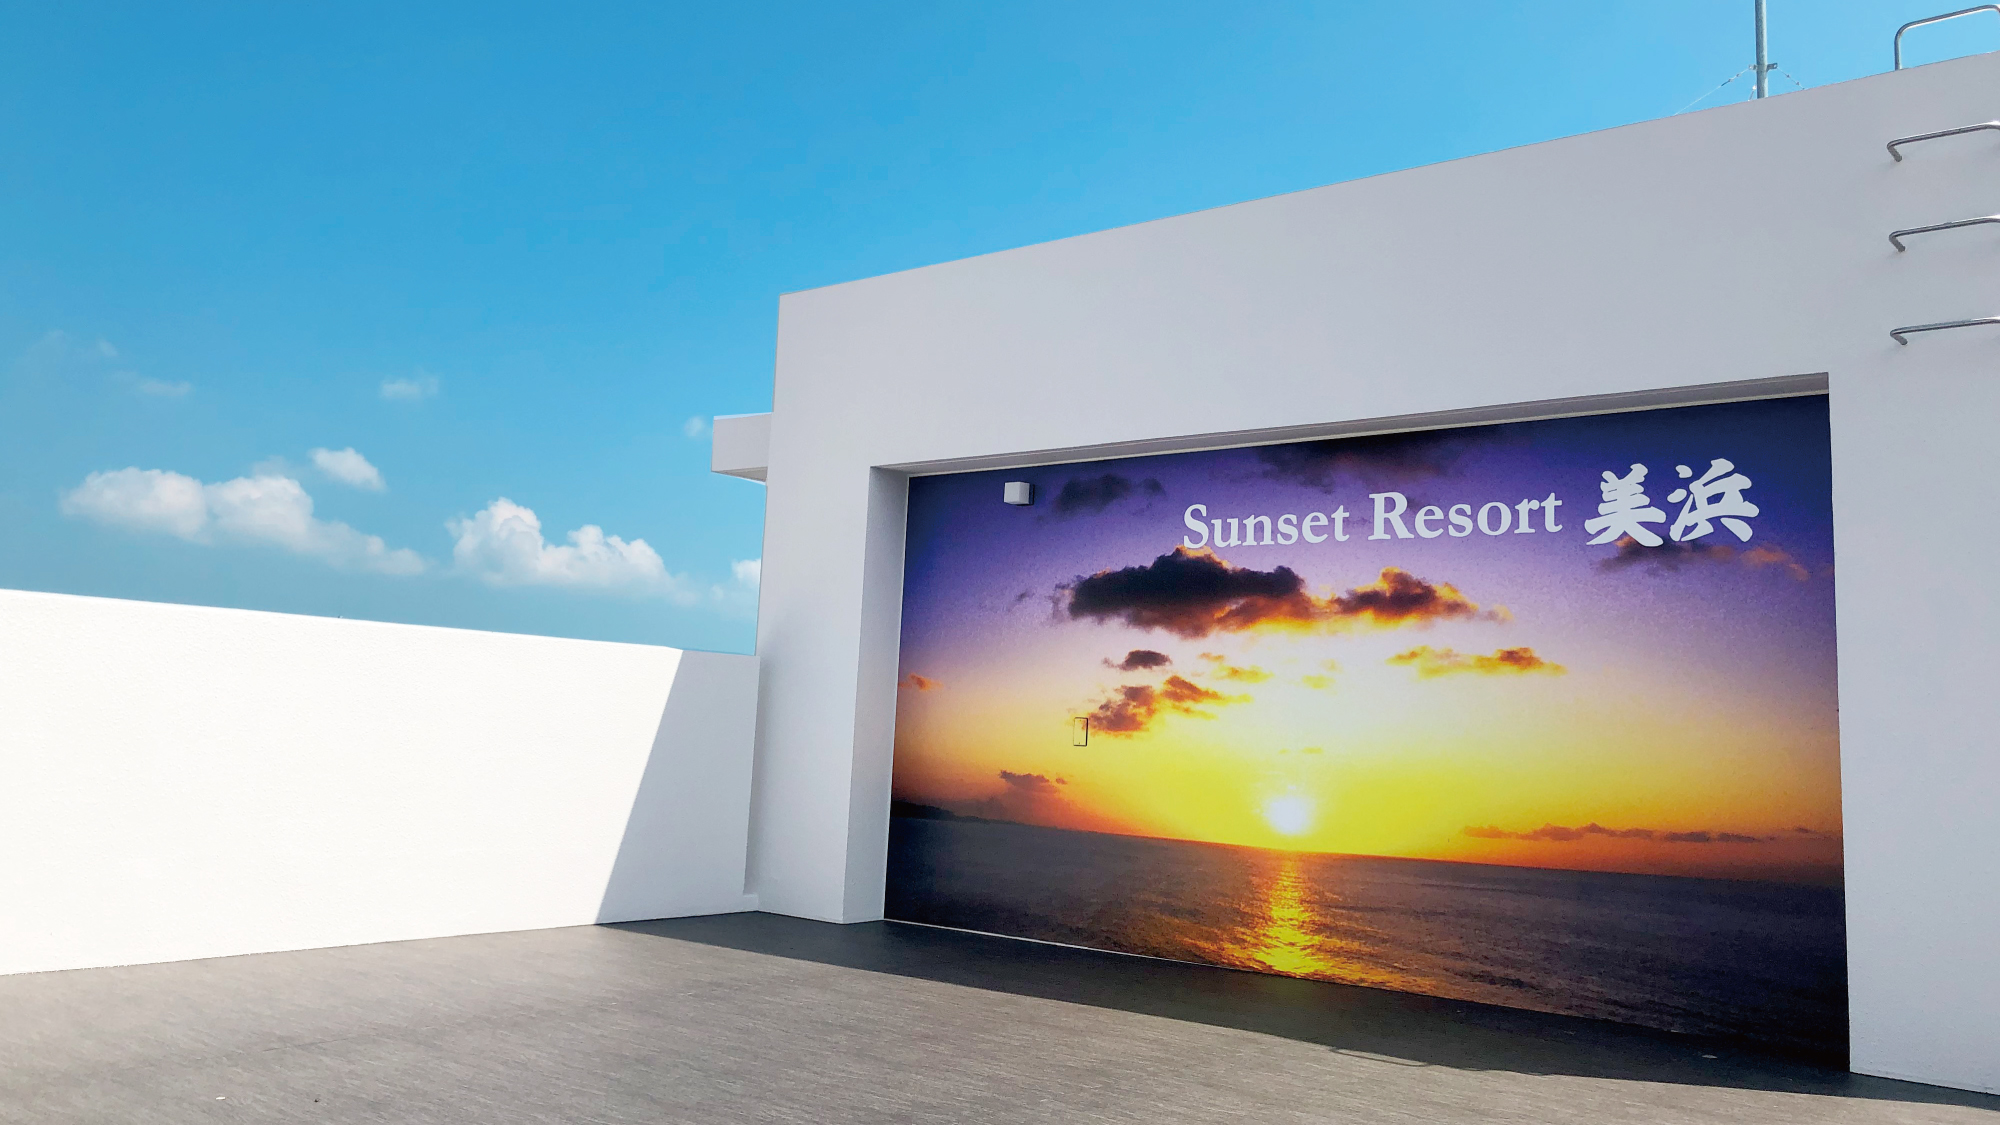 Sunset Resort Mihama